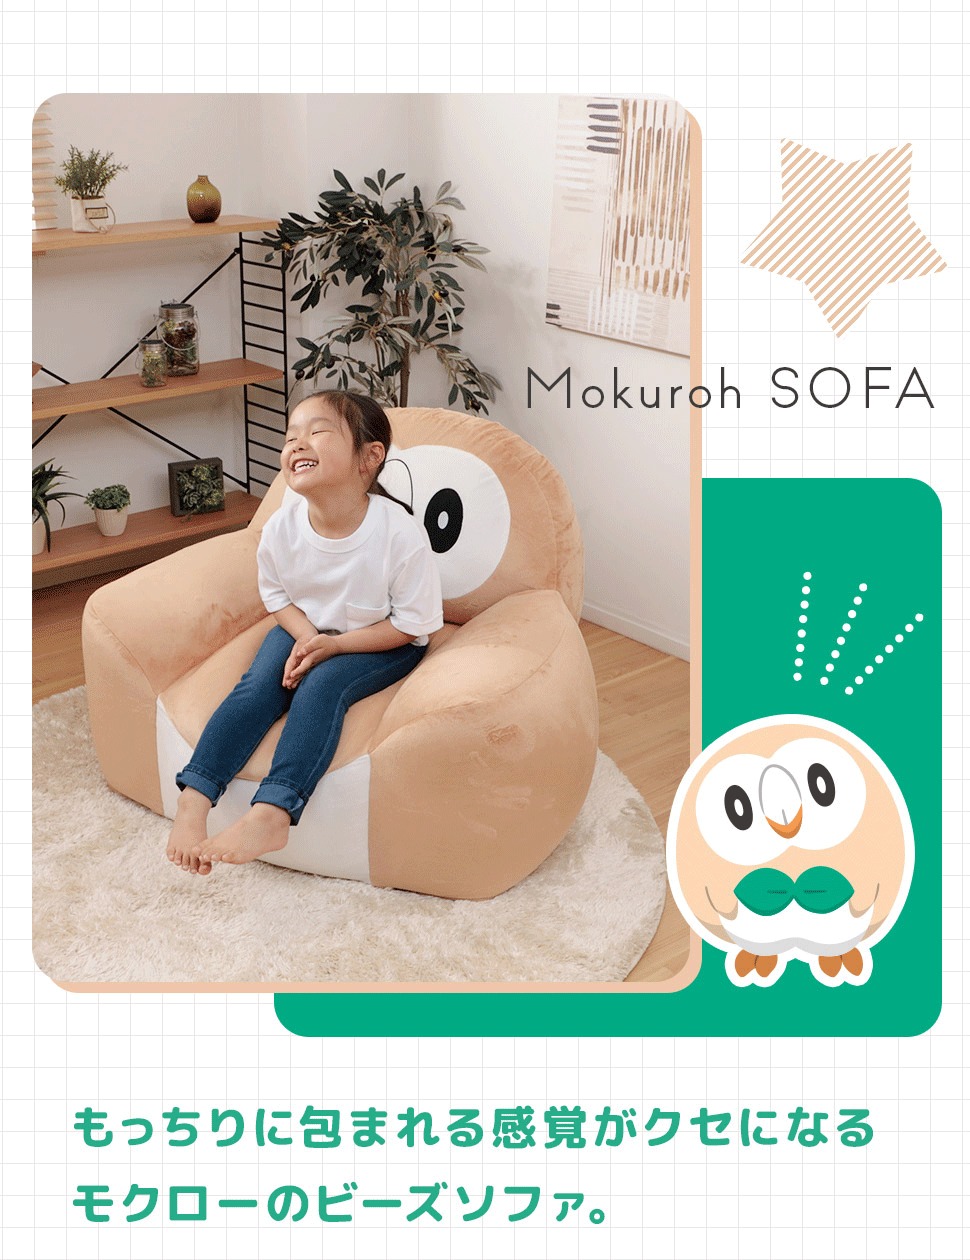 Pokémon: ¡Un sofa inspirado en Rowlet ha sido anunciado en Japón! 3